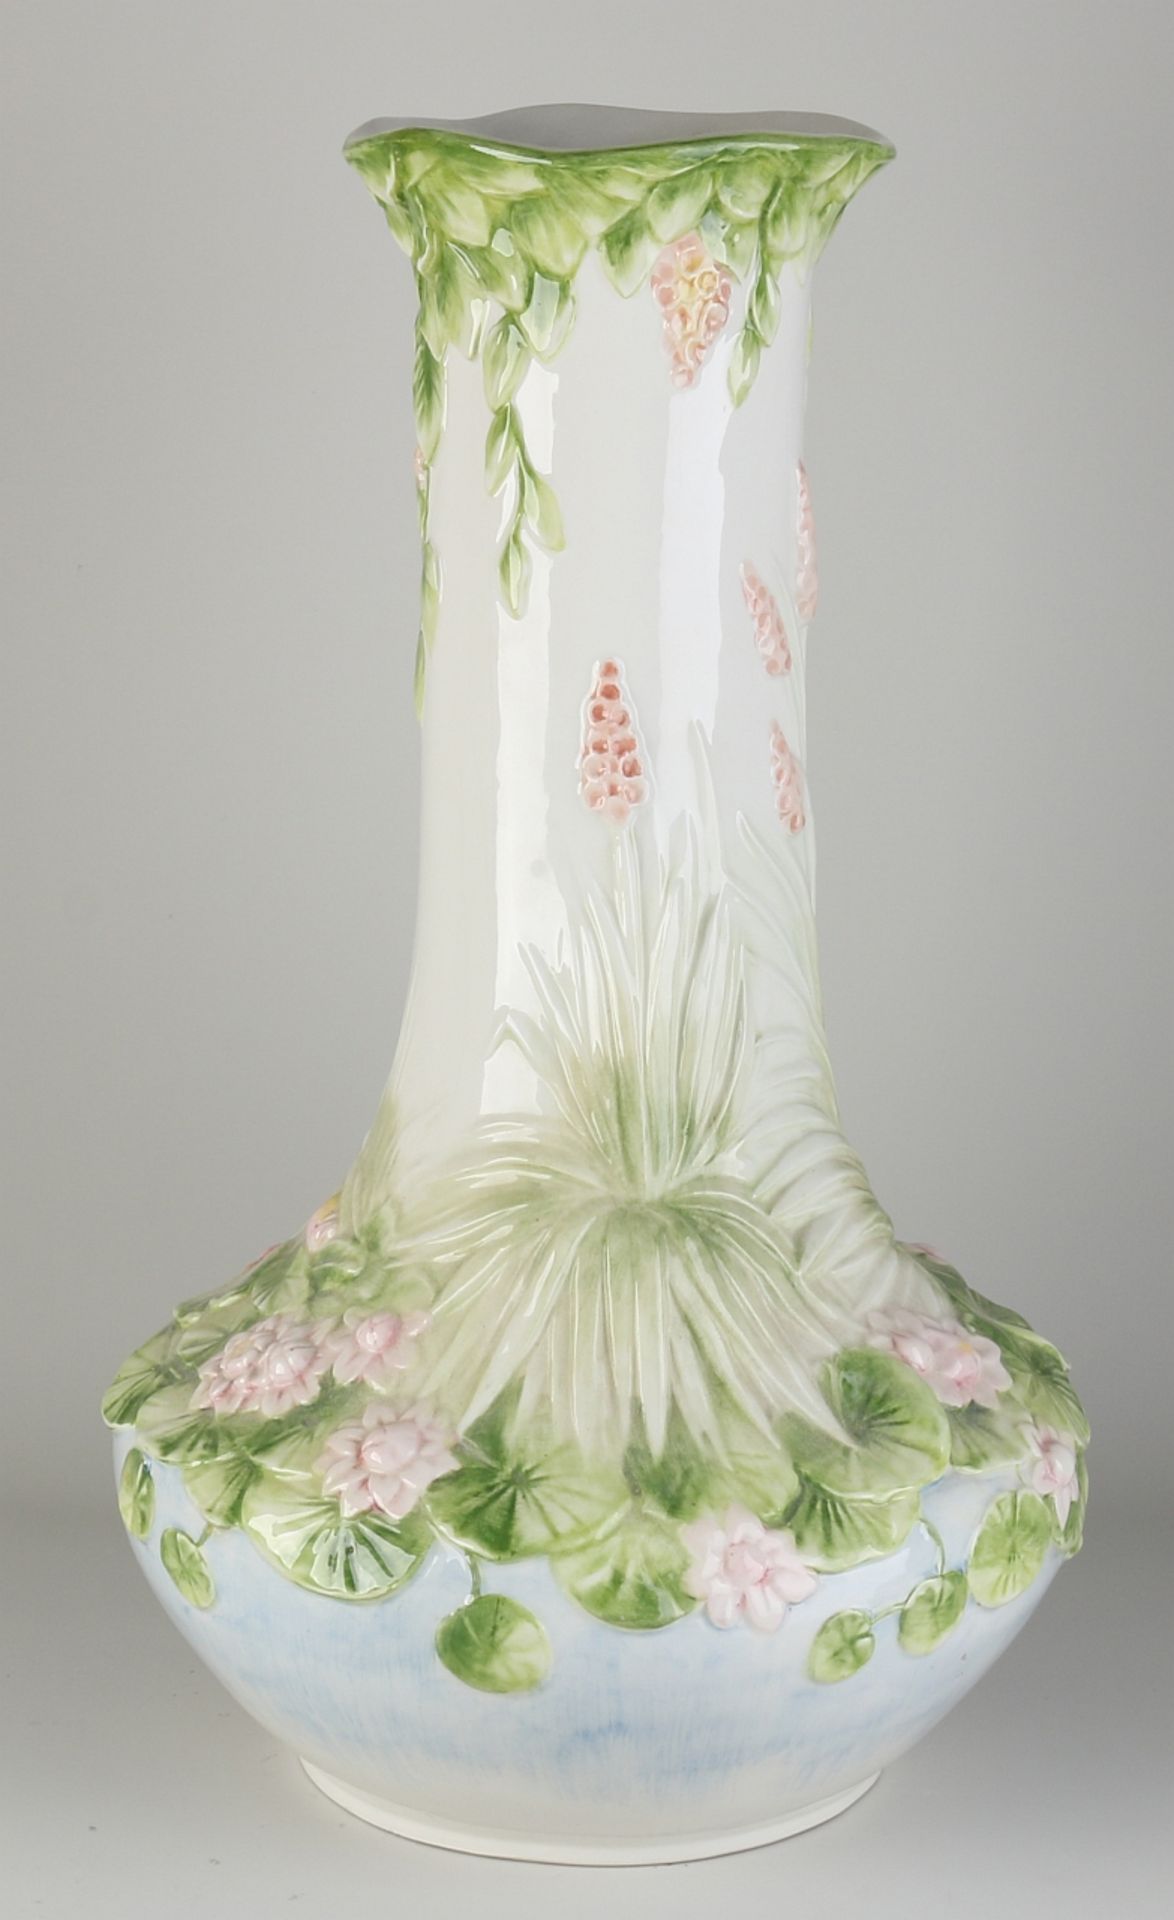 Italian Art Nouveau style vase - Bild 2 aus 3